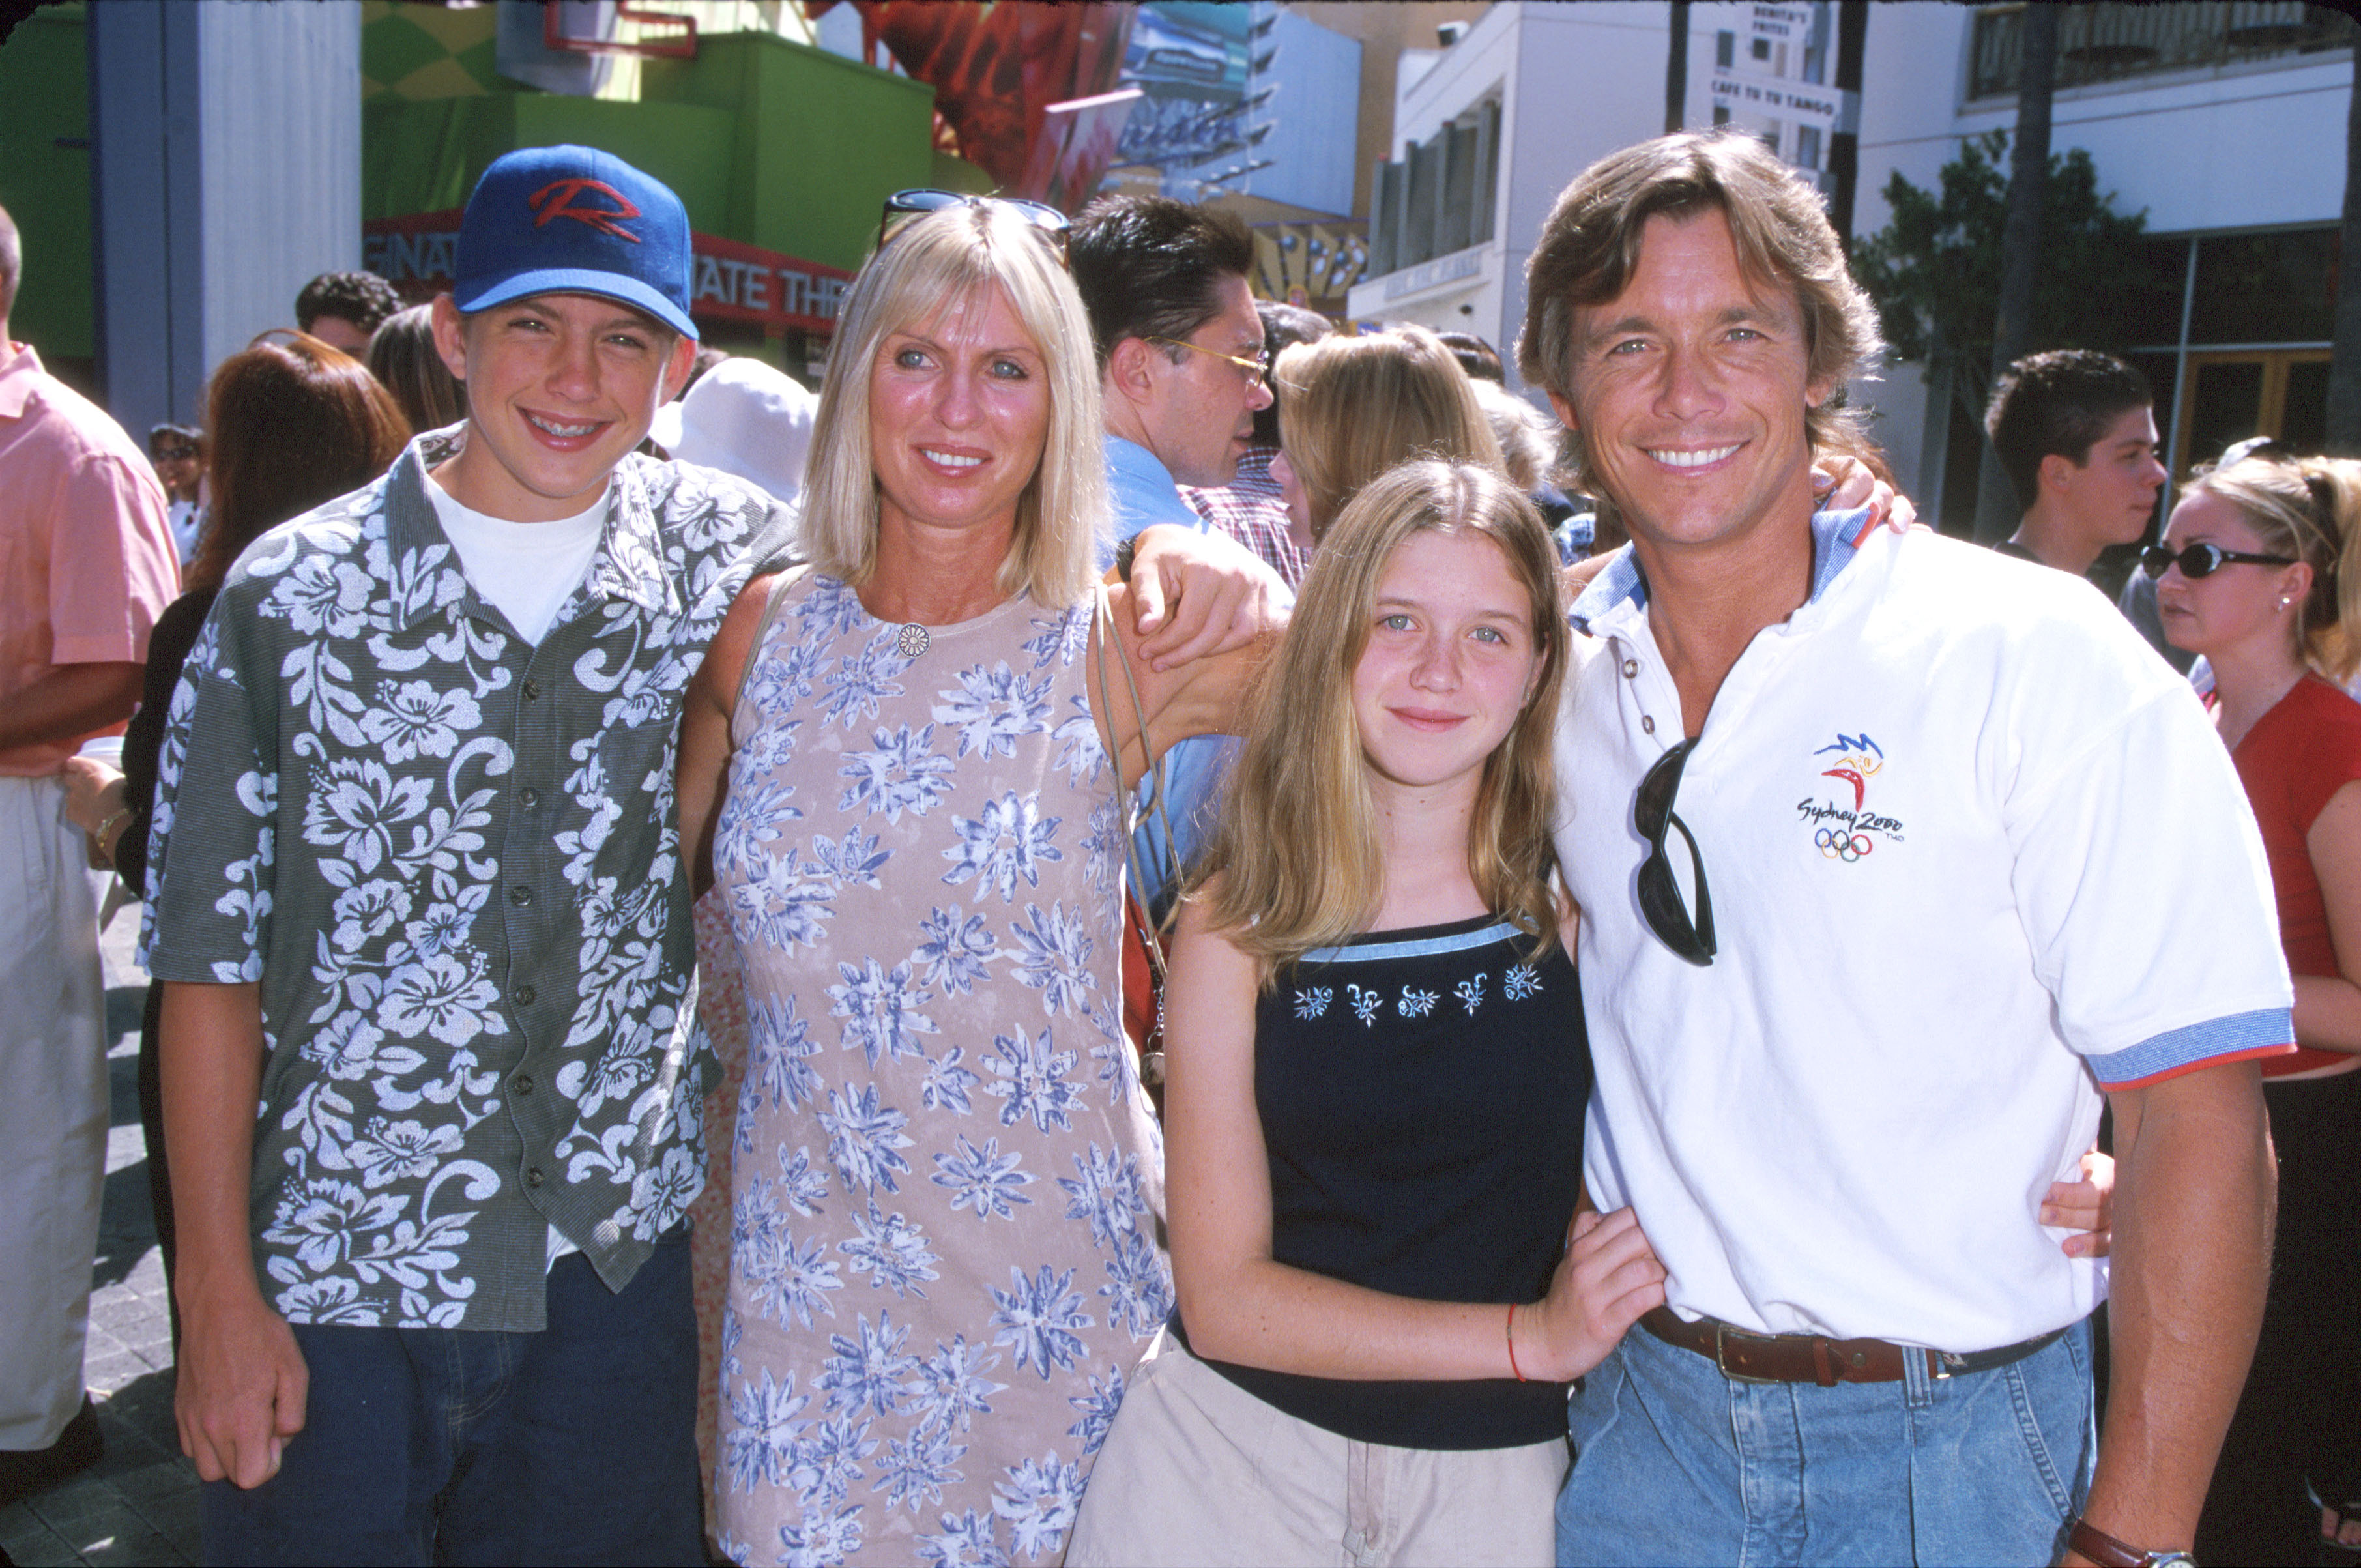 Chris Atkins con su familia en el estreno de "Las aventuras de Rocky y Bullwinkle" el 24 de junio de 2000, en Universal City, California. | Fuente: Getty Images